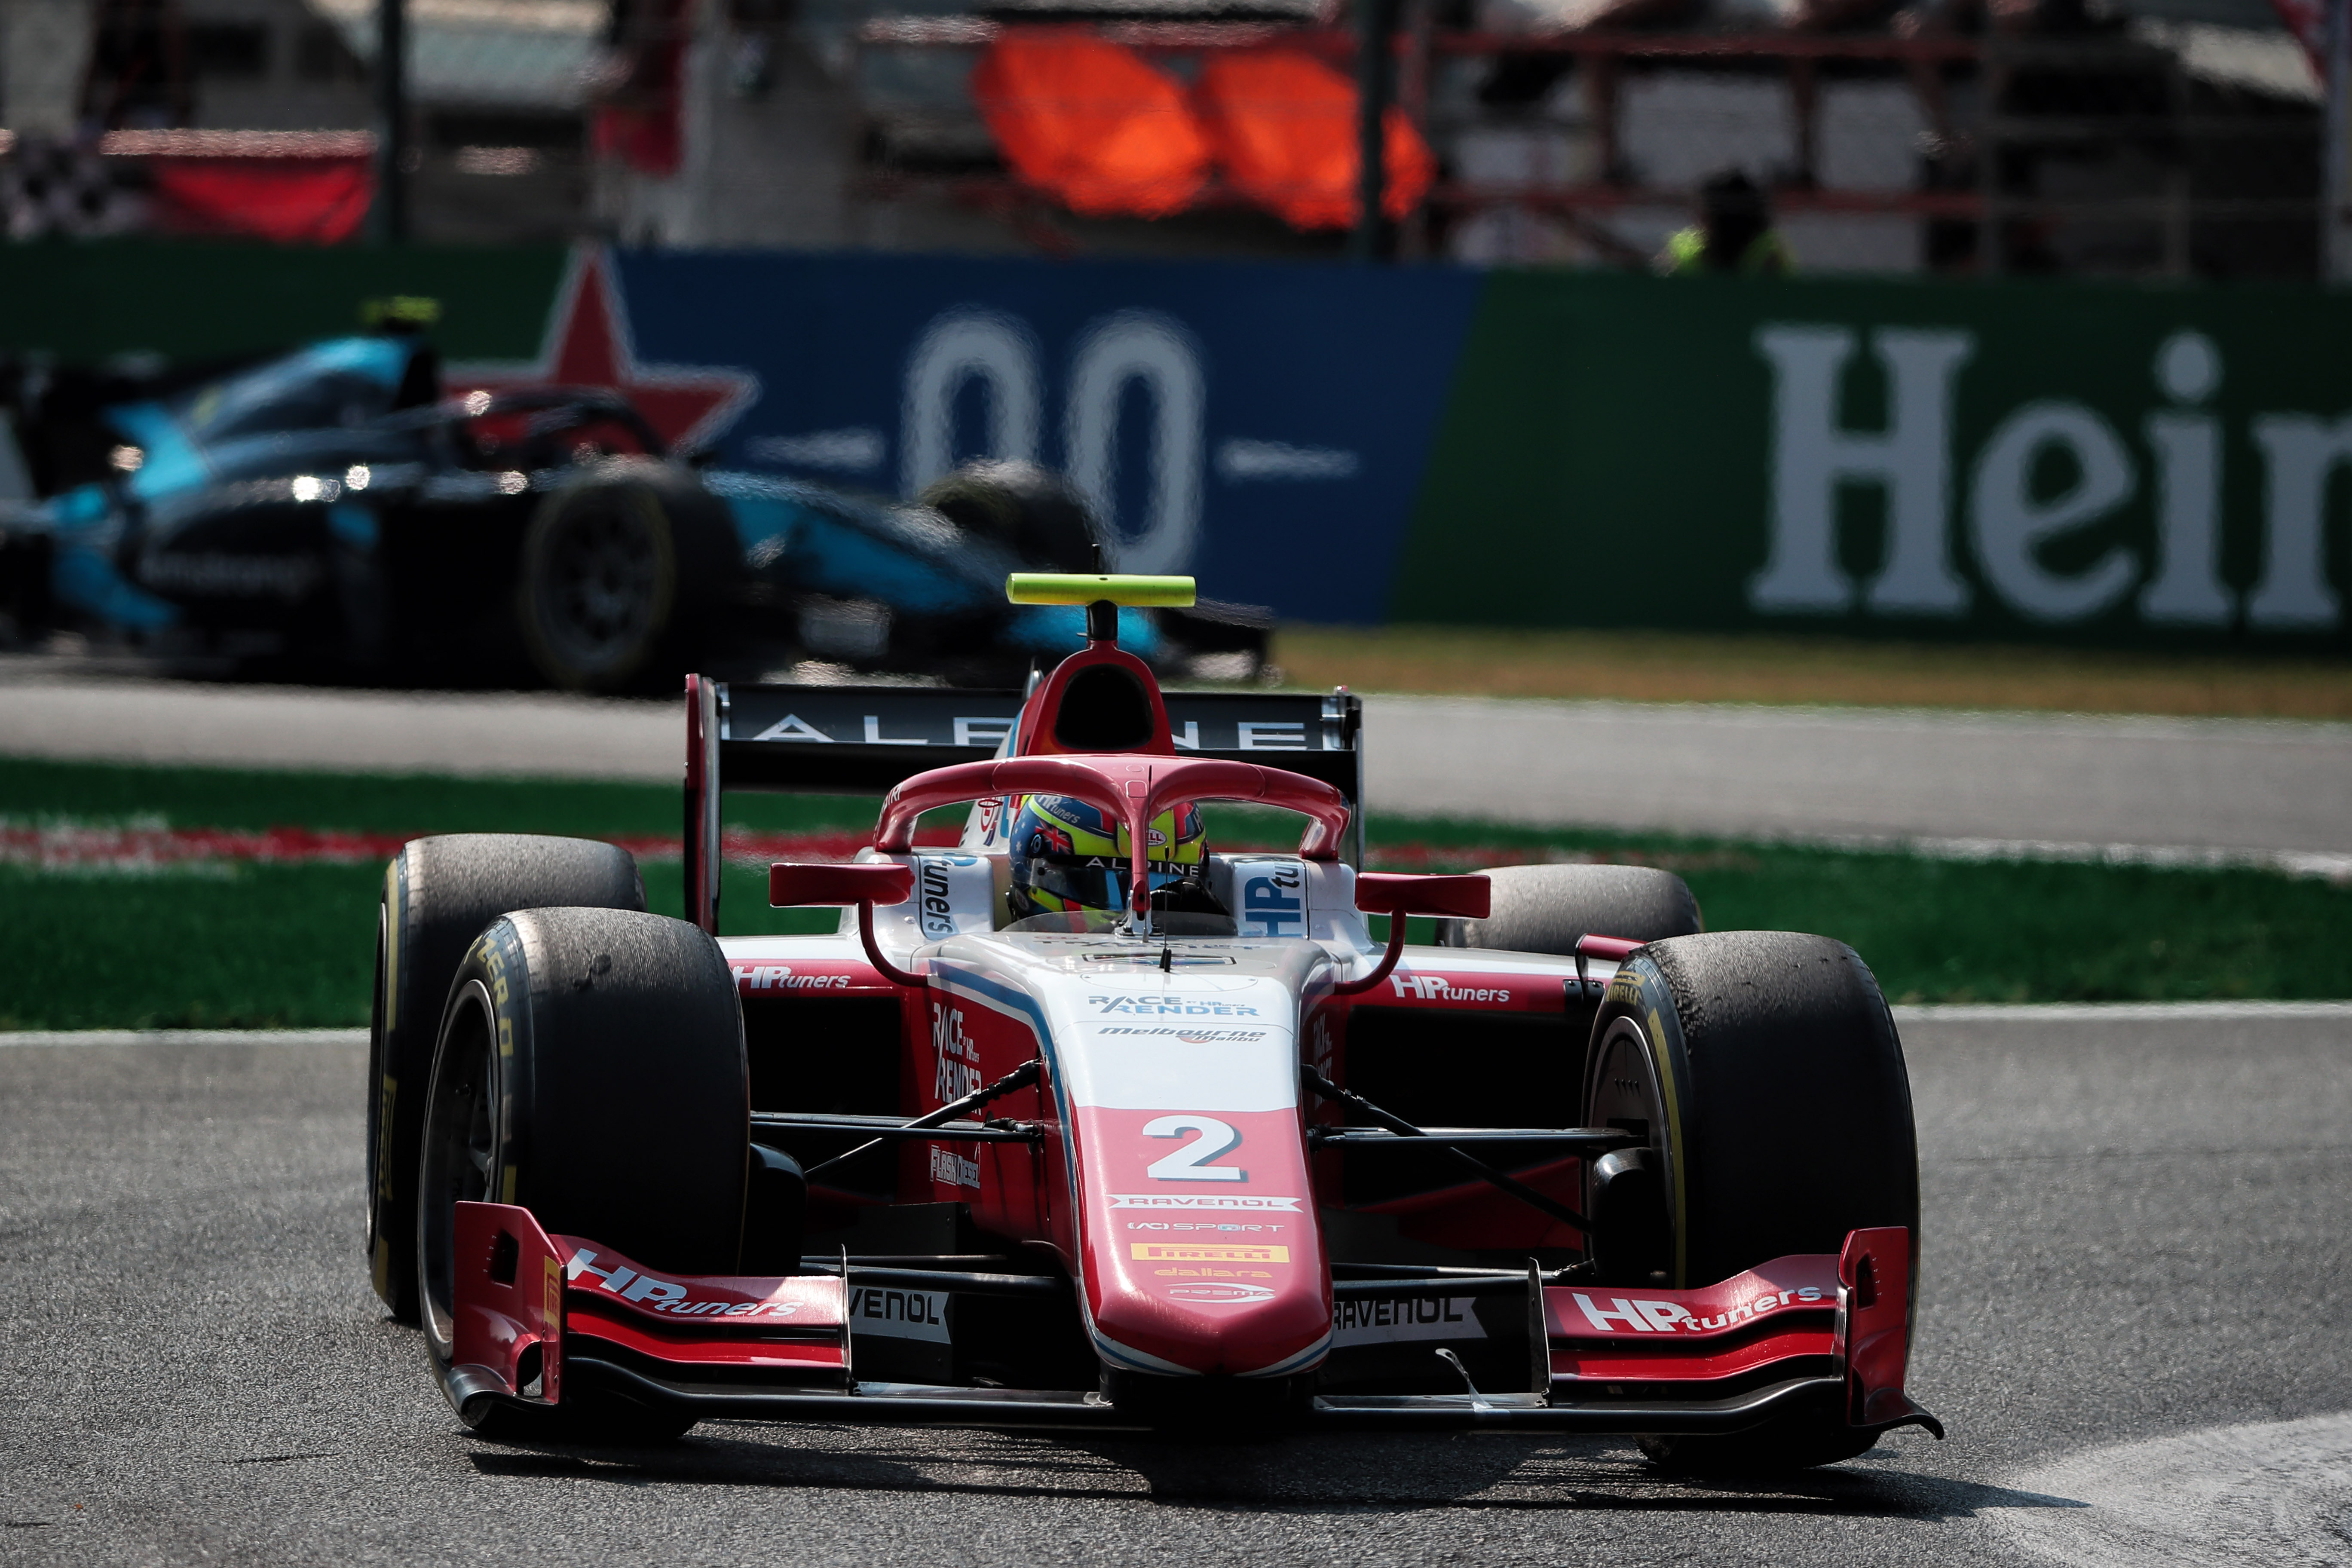 Campionat de Fórmula 2 Fia de curses d'automòbils dissabte Monza, Itàlia